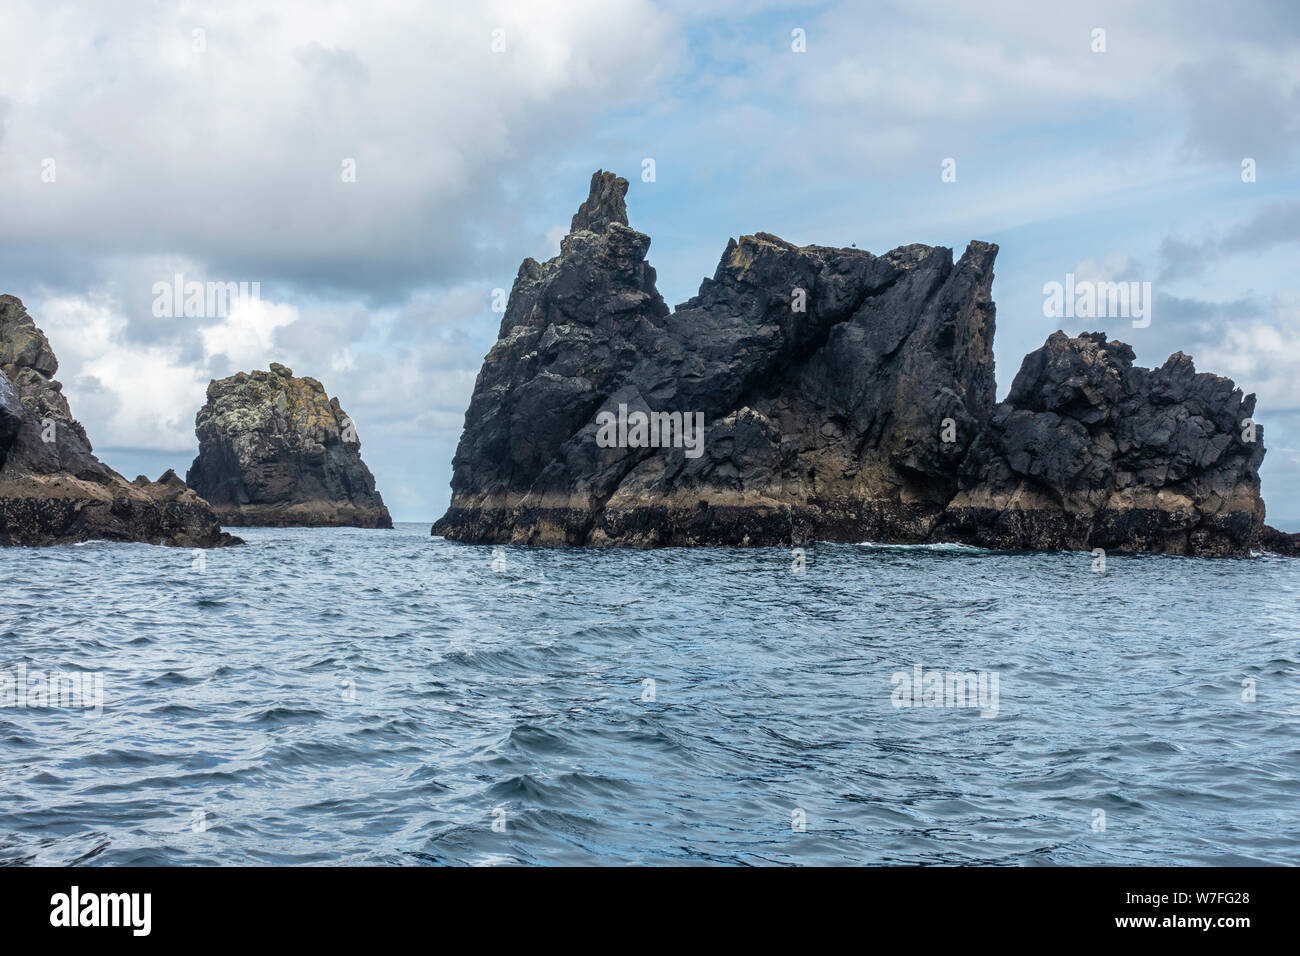 Robuste Aufschlüsse aus der Blasket Islands Gruppe vom Boot aus gesehen - der Halbinsel Dingle in der Grafschaft Kerry, Republik von Irland Stockfoto